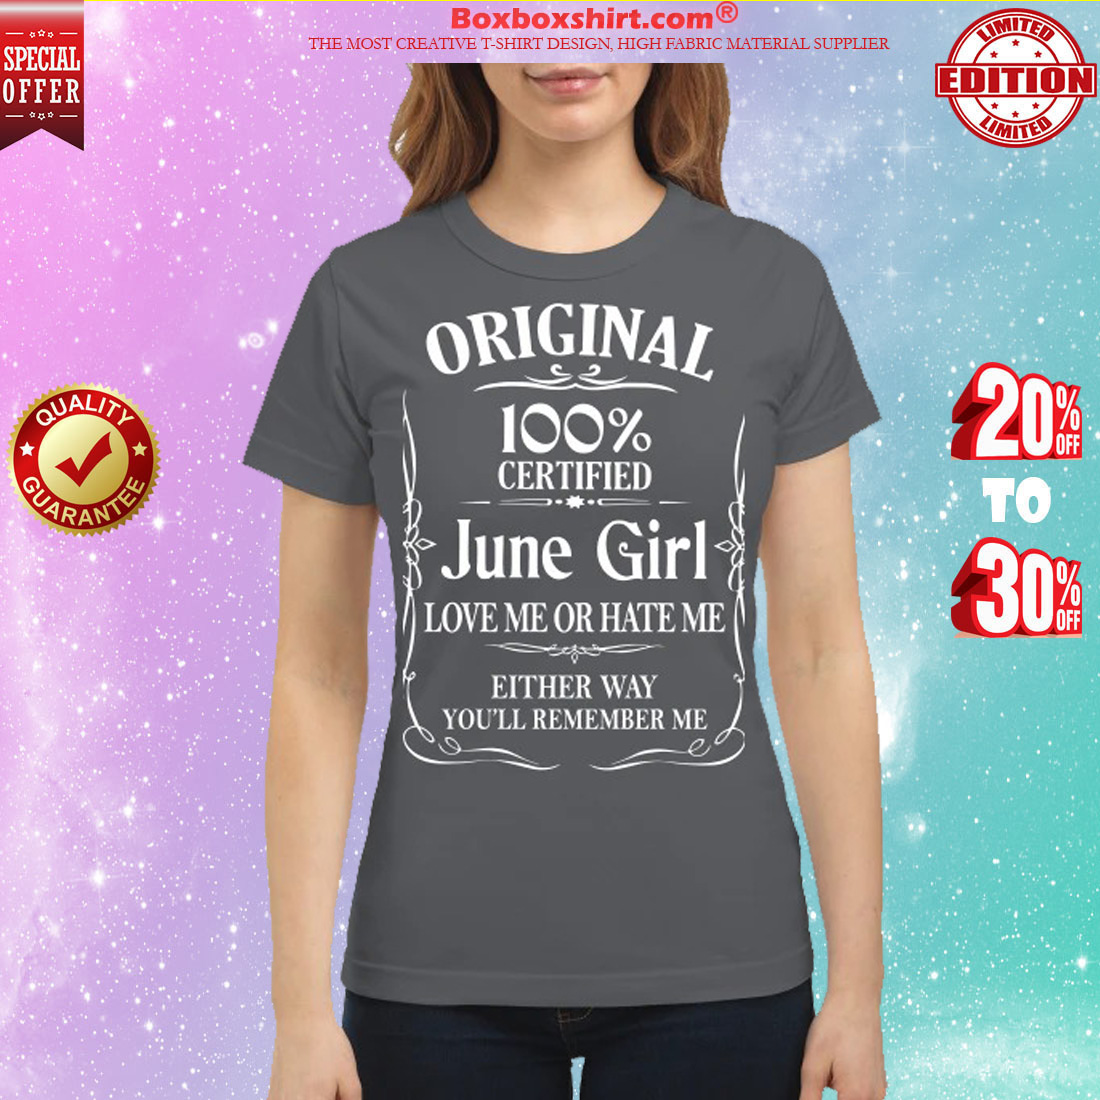 Original 100% certified June girl love me or hate me classic shirt